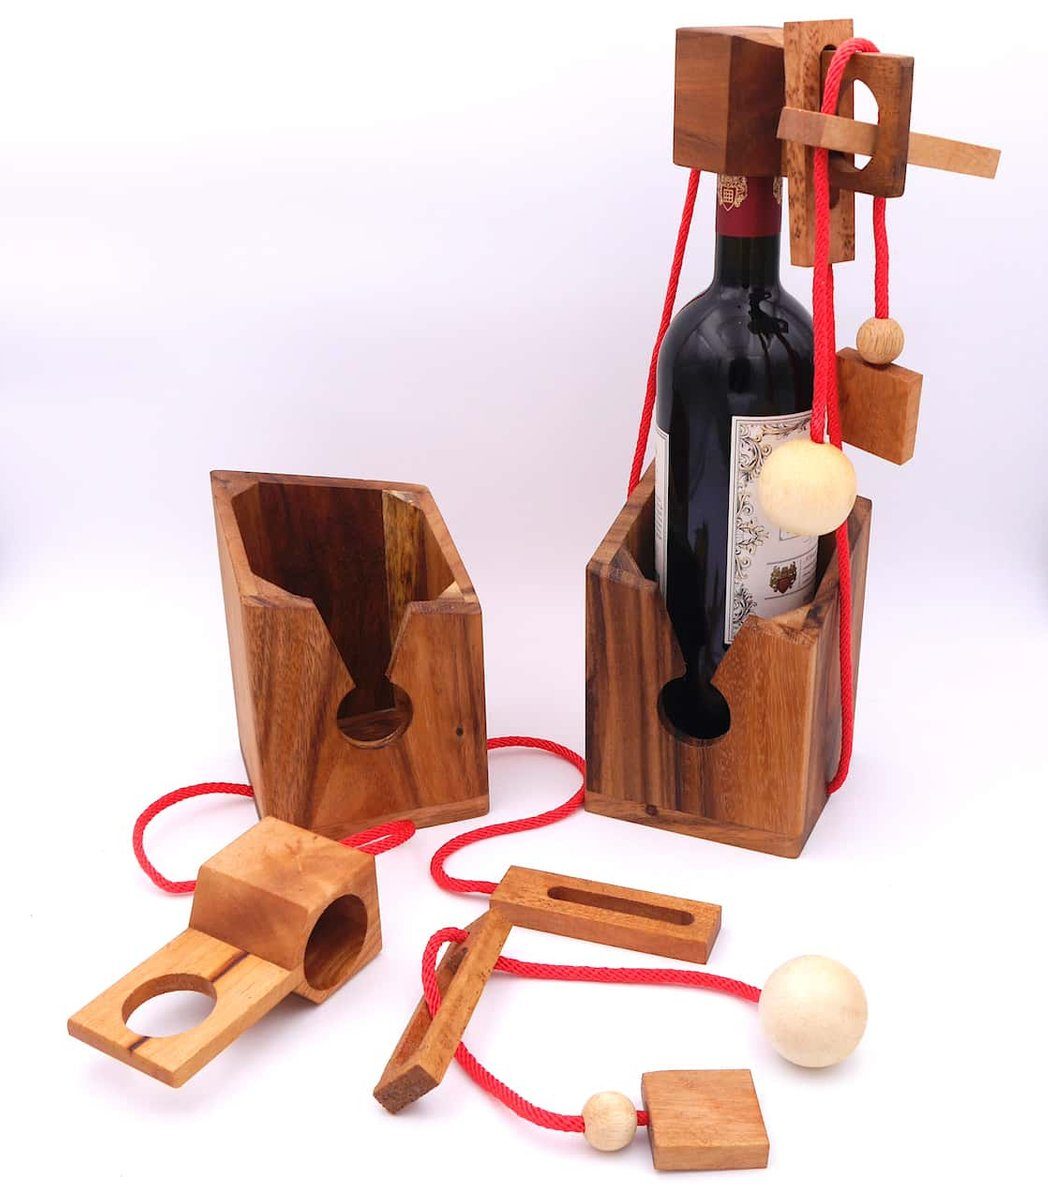 dunkles ROMBOL rotes Holz, Edles Geschenkverpackung Denkspiel Denkspiele große aus für Flaschen, Band Holz wiederverwendbar Flaschentresor – Spiel,